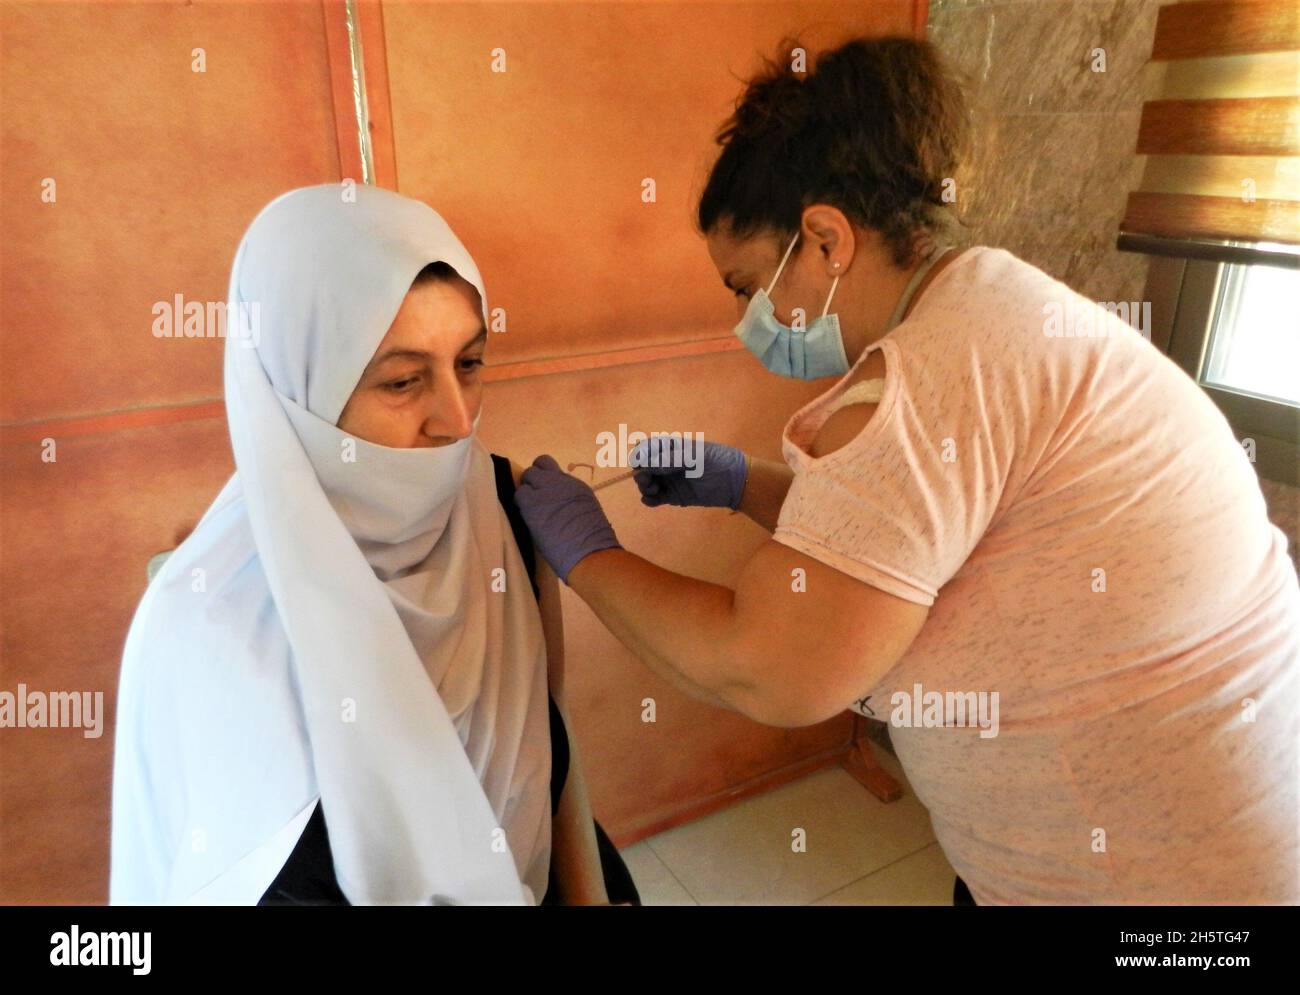 Shebaa, Libanon. November 2021. Eine Frau erhält am 11. November 2021 in der Stadt Shebaa, östlich des Südlibanon, die dritte Dosis des Impfstoffs COVID-19. Der Libanon verzeichnete am Mittwoch die höchste Zahl von COVID-19-Infektionen seit dem 8. September mit einem Anstieg um 1,004 Fälle, berichtete das Gesundheitsministerium. Quelle: Taher Abu Hamdan/Xinhua/Alamy Live News Stockfoto